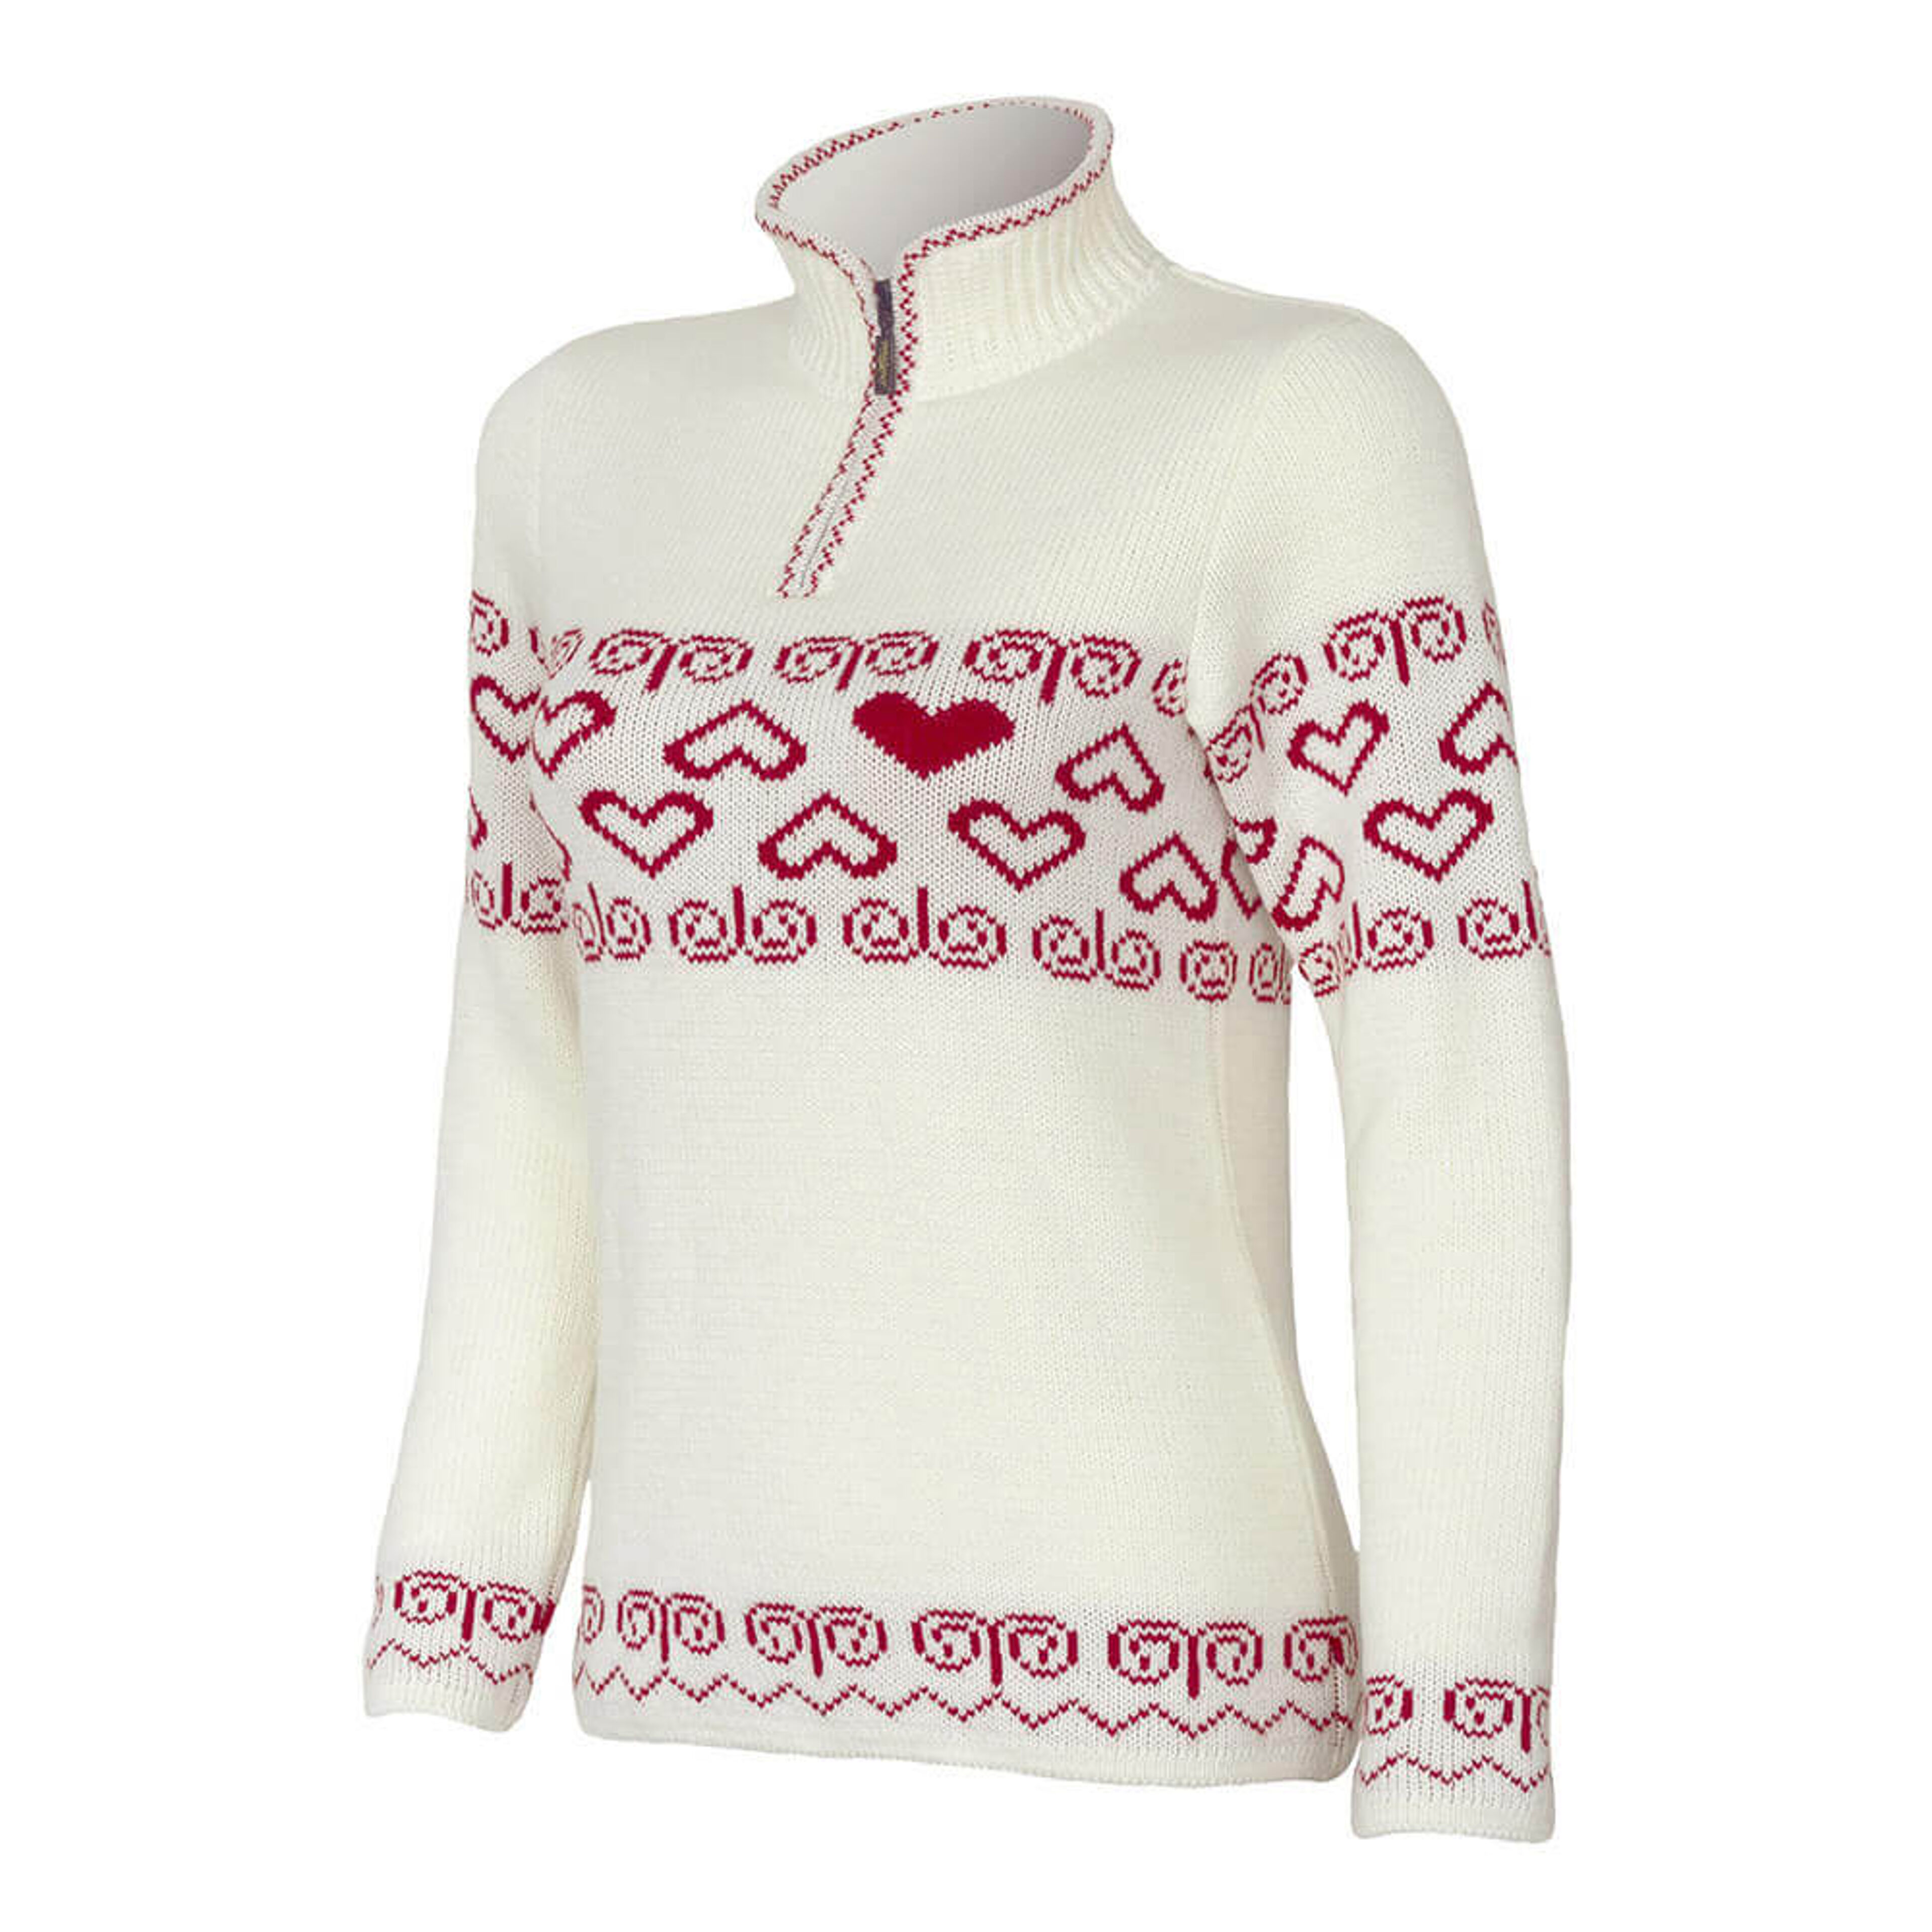 SportCool Women’s sweater with Čičmany pattern